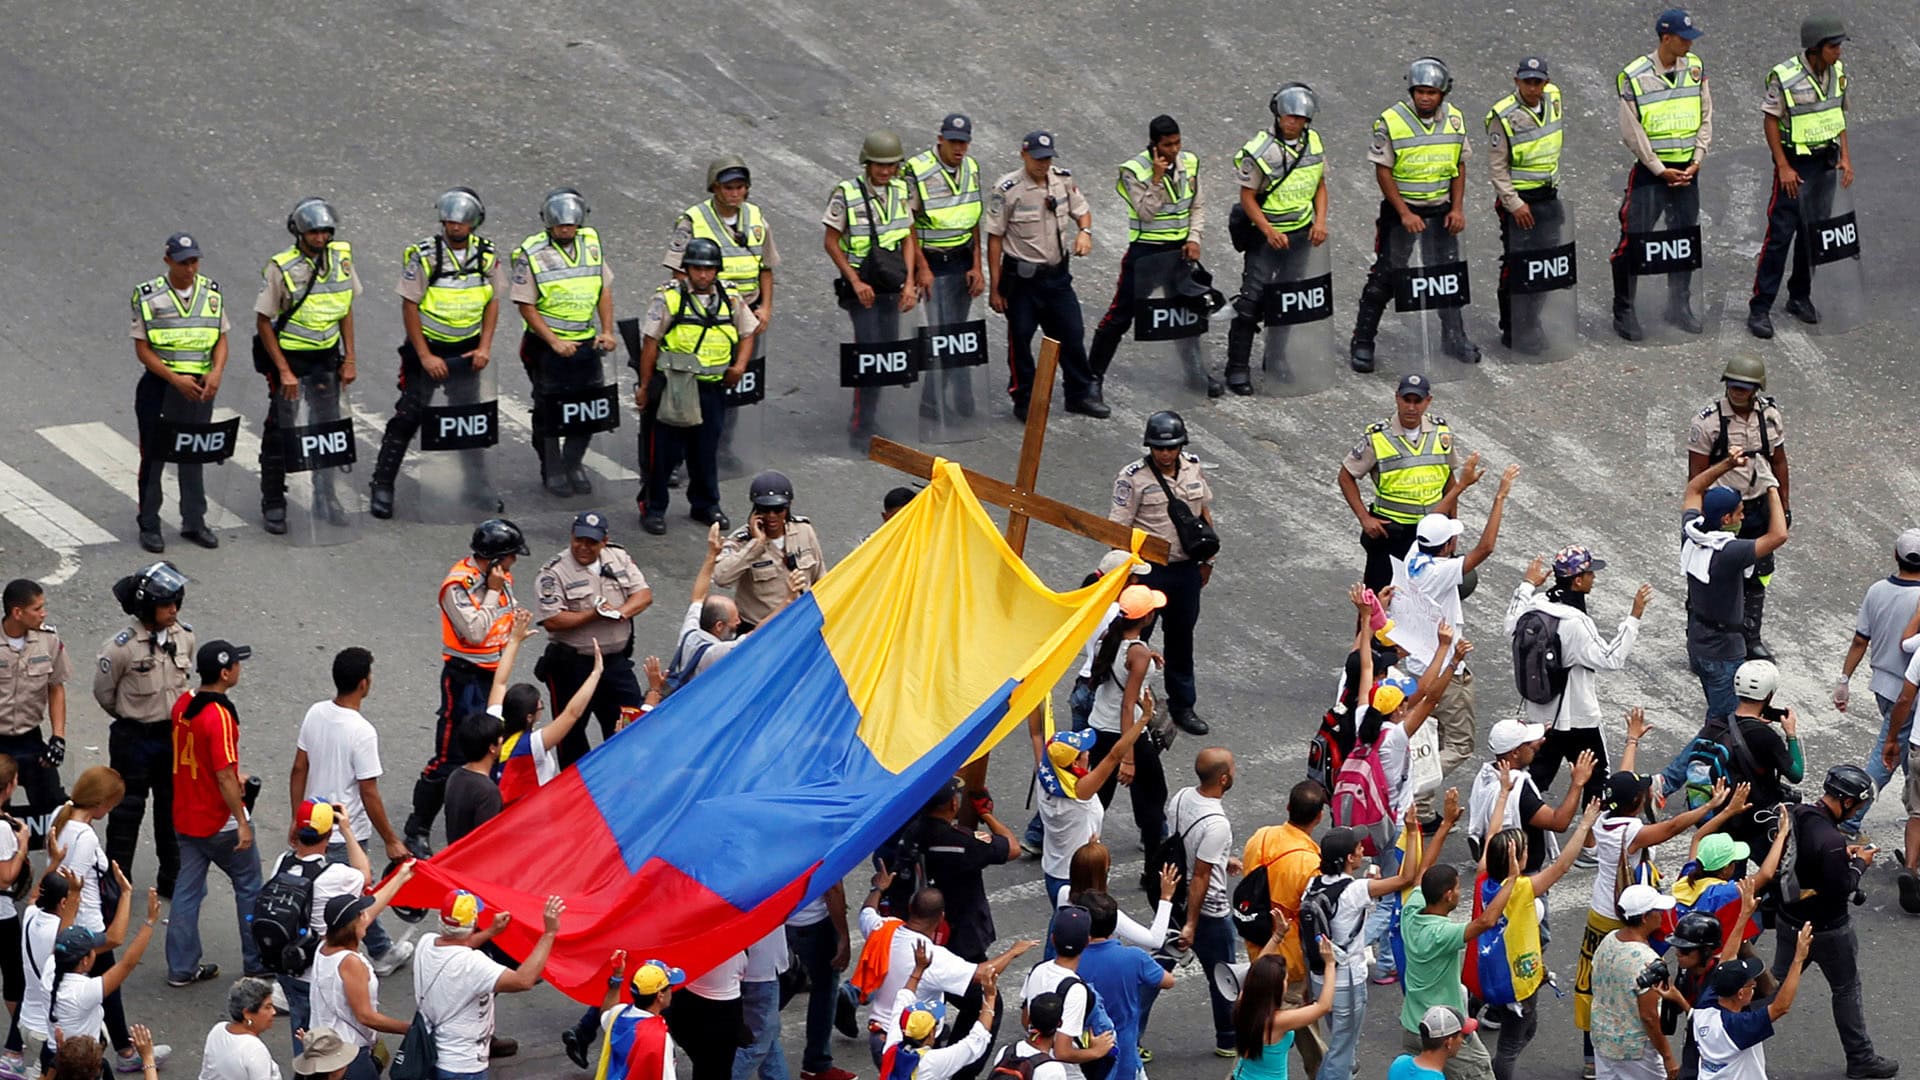 El Foro Penal Venezolano (FPV) dice que hay 777 detenidos por protestar contra el Gobierno